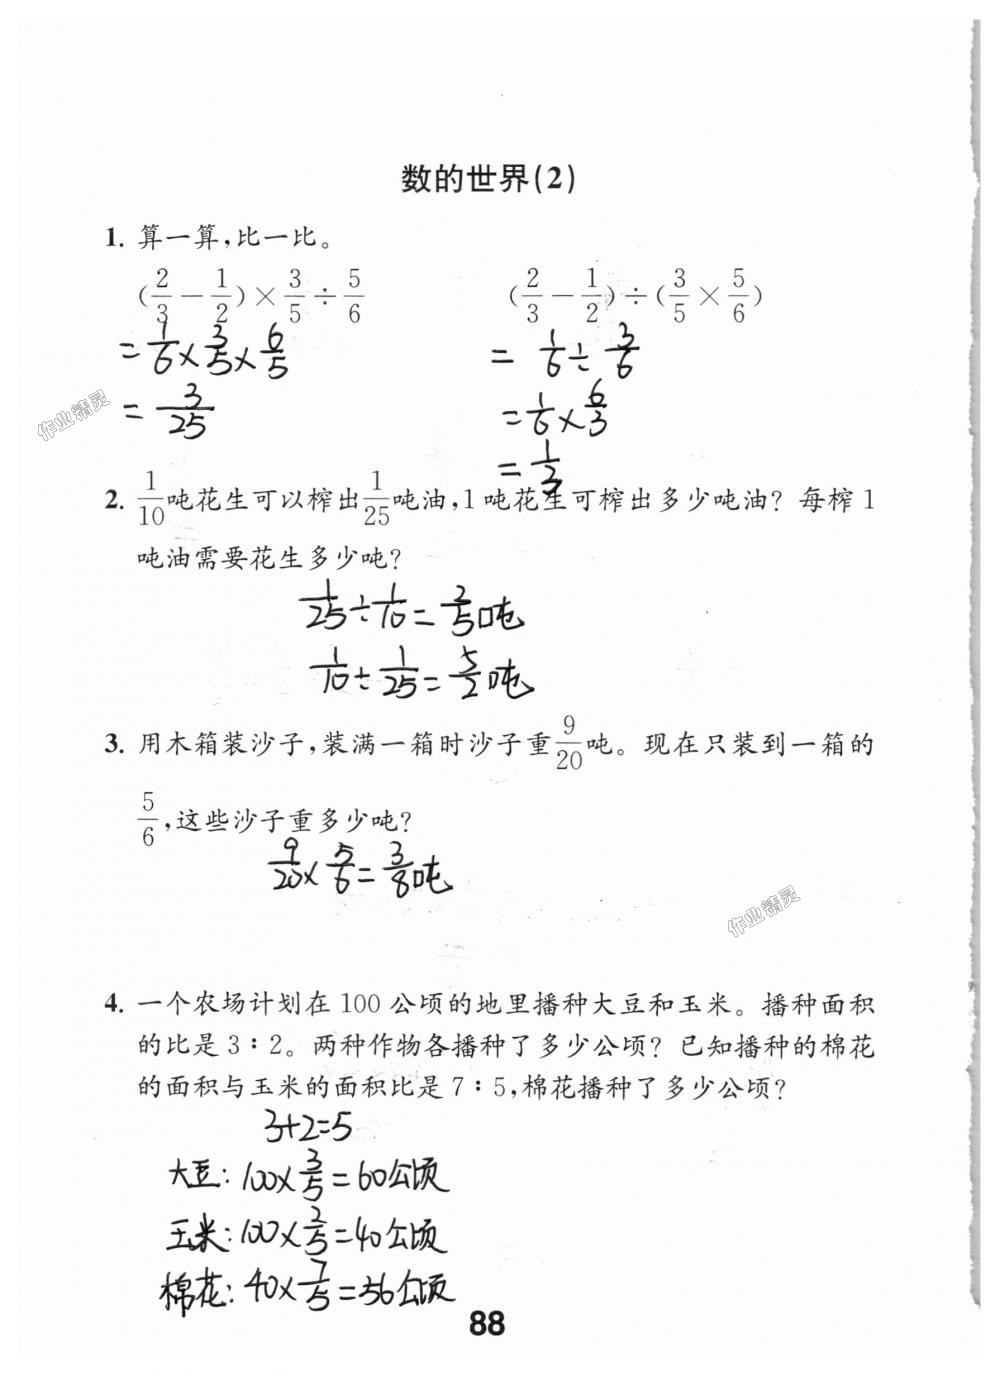 2018年数学补充习题六年级上册苏教版江苏凤凰教育出版社 第88页